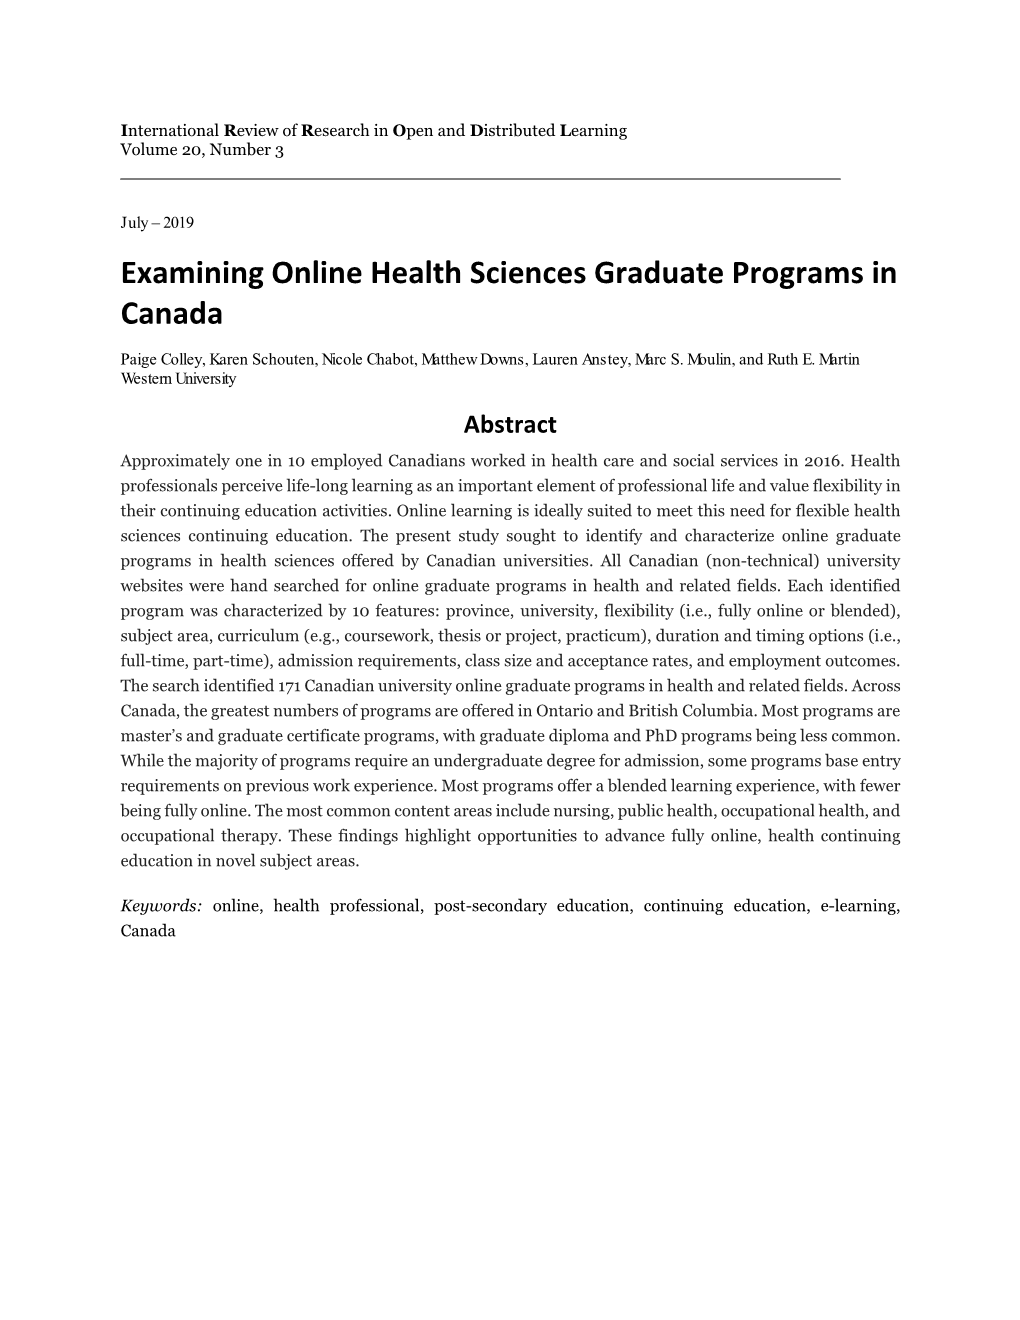 Examining Online Health Sciences Graduate Programs in Canada